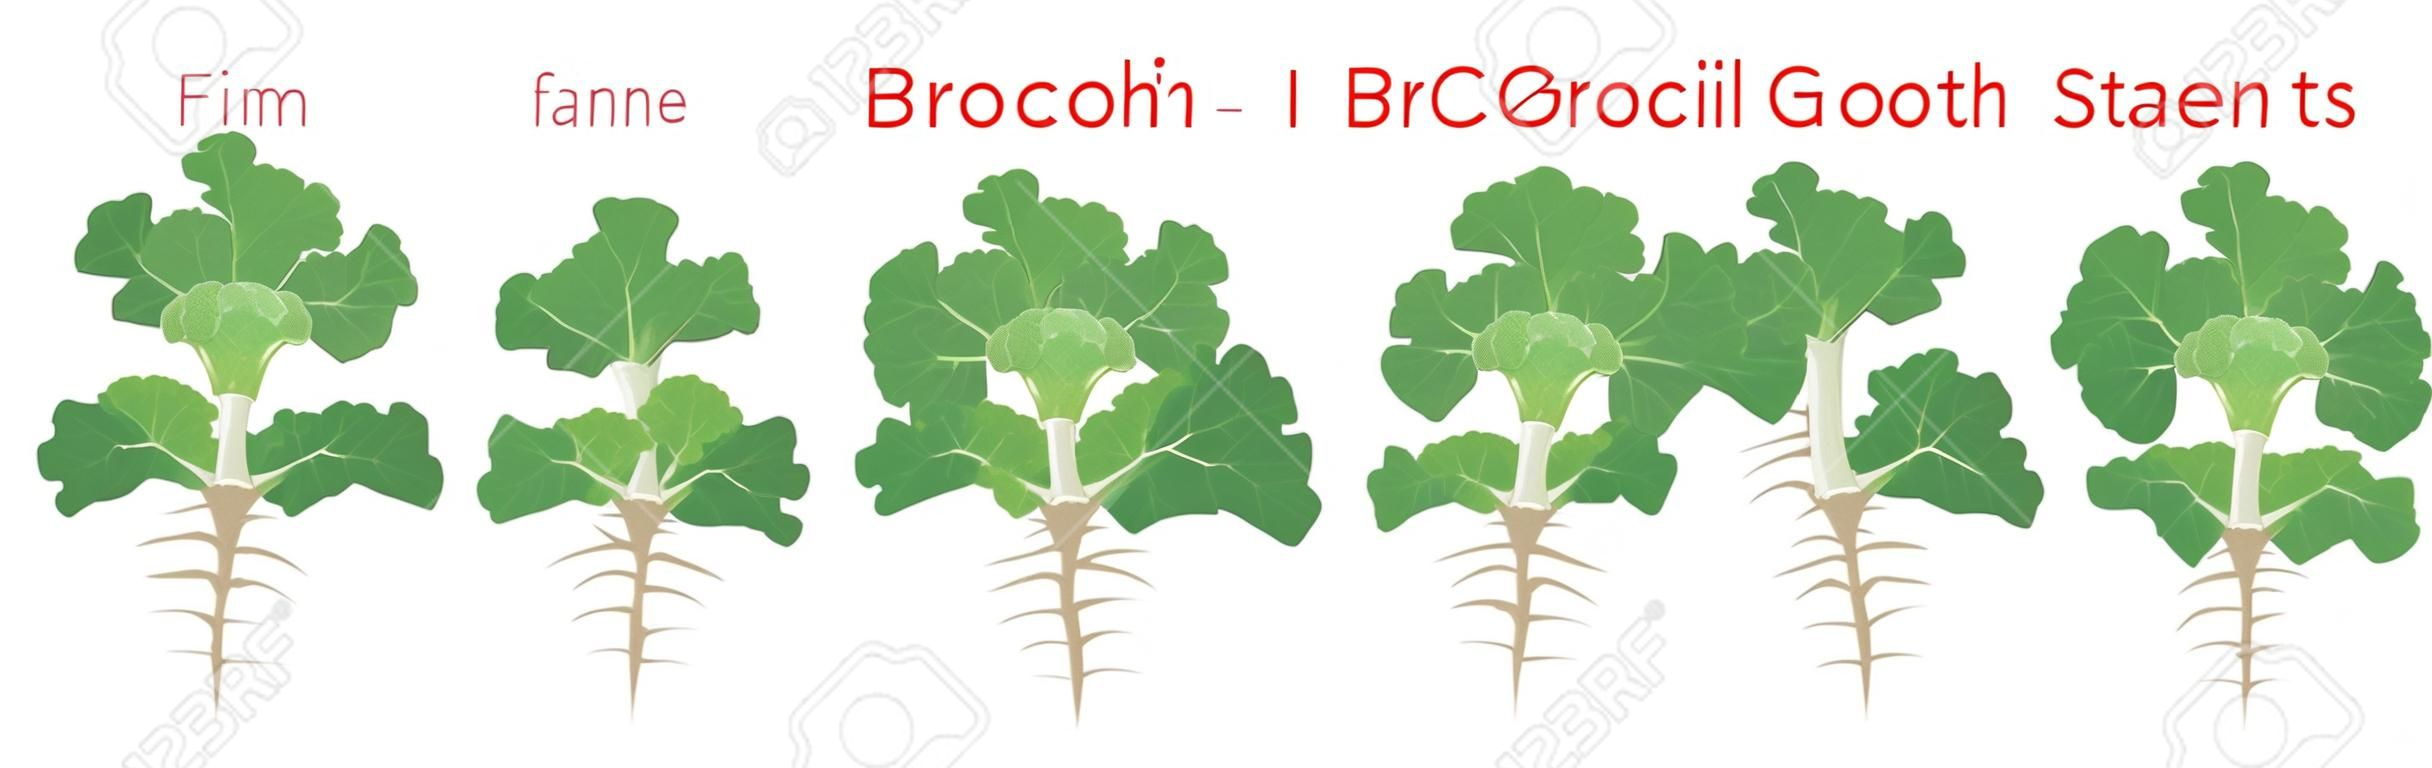 브로콜리 식물 성장 단계 infographic 요소입니다. 씨앗에서 브로콜리의 성장 과정, 뿌리가 있는 성숙한 식물로 새싹, 흰색 배경 벡터 평면 그림에 격리된 식물의 수명 주기